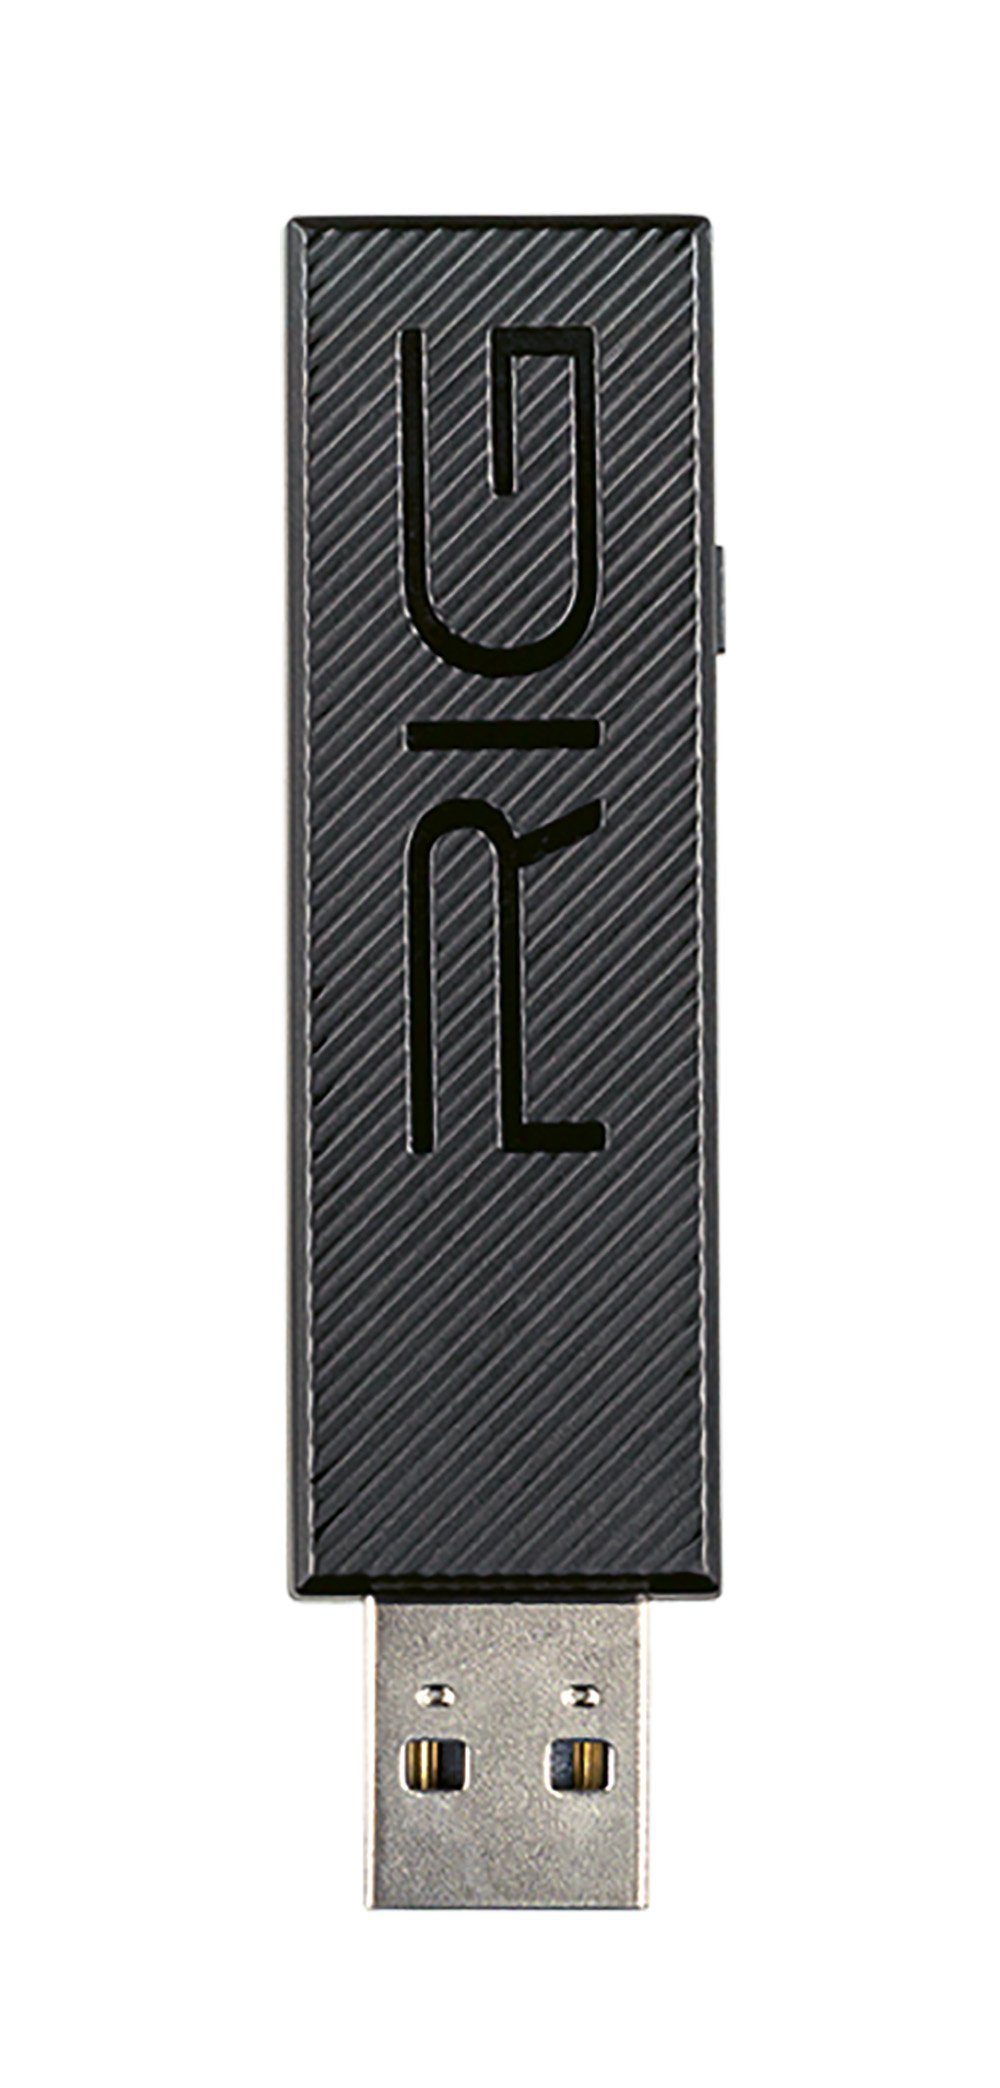 PS4 PS5) 800 HS, RIG PC, mit Gaming-Headset nacon kabellos (kompatibel schwarz, PRO USB, und